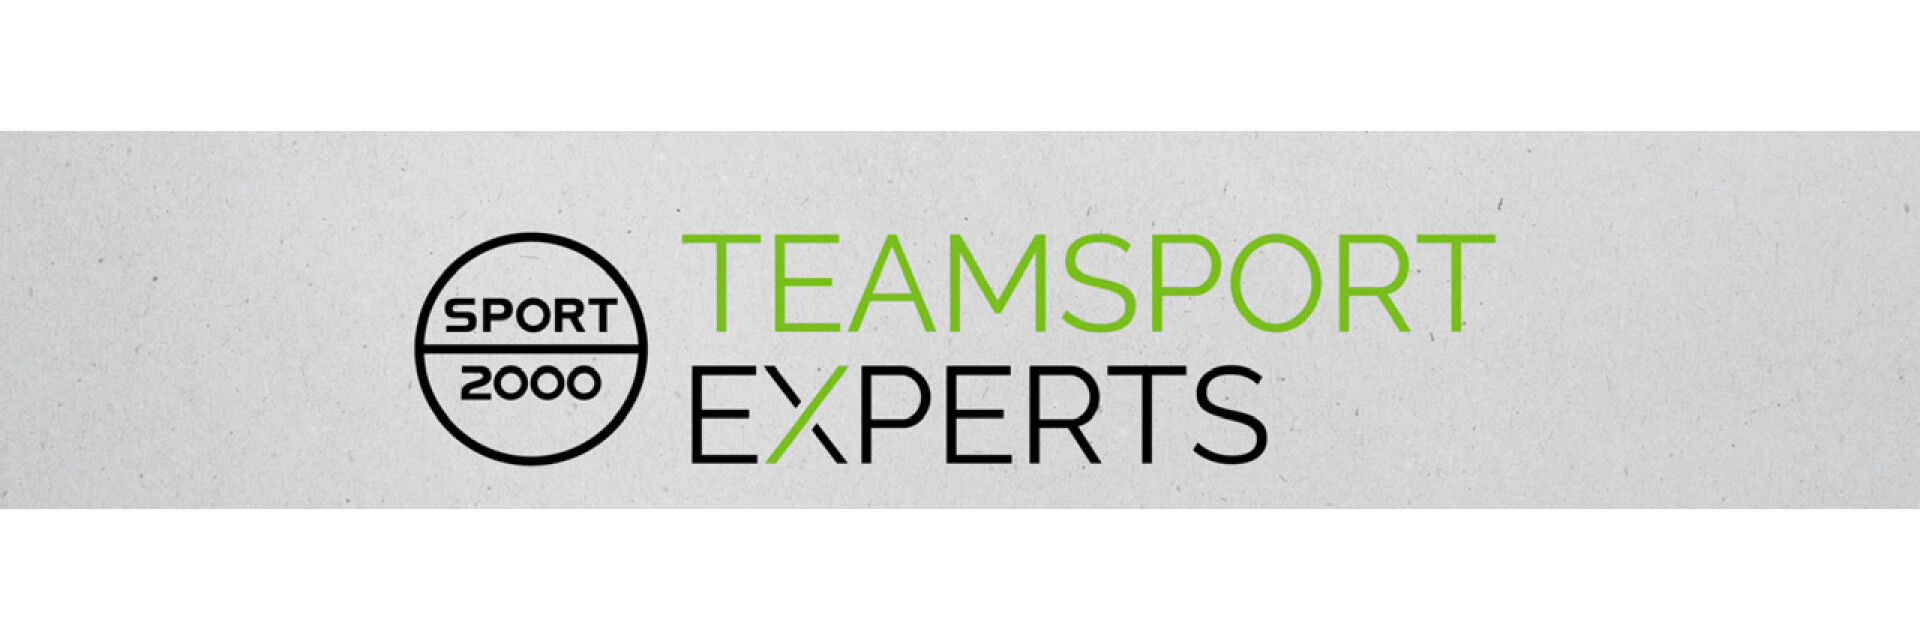 Teamsport Experts